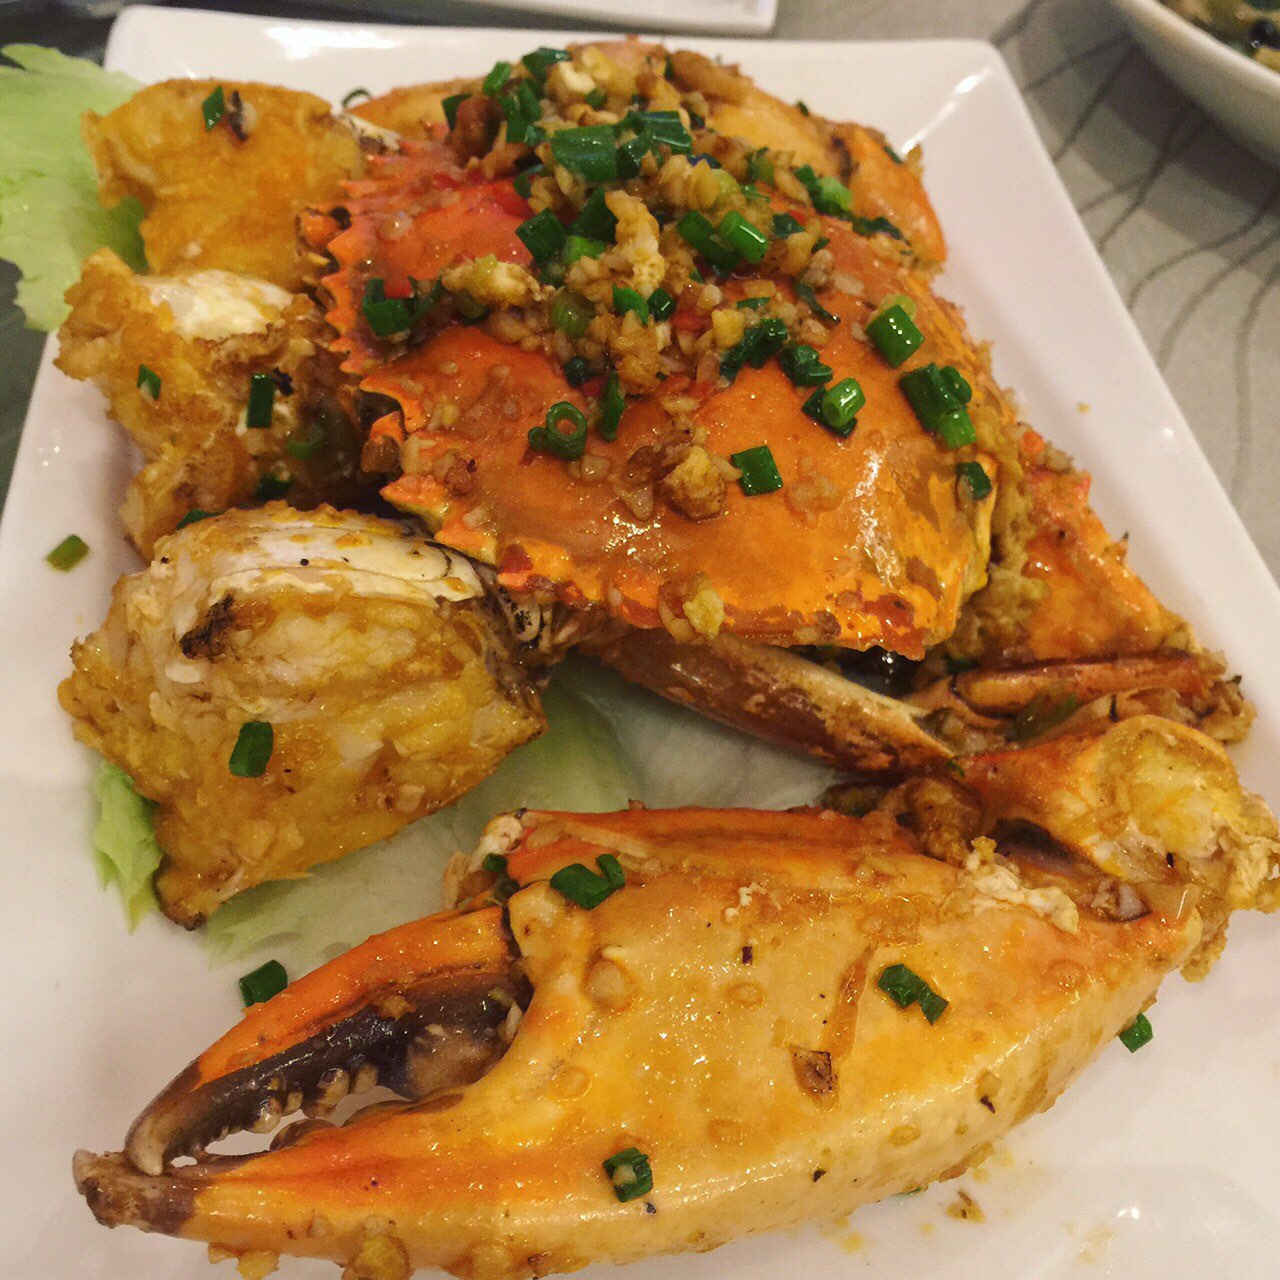 晚餐就是克拉码头的“珍宝海鲜楼”店内招牌首推辣椒螃蟹，甘甜中带点辣劲。